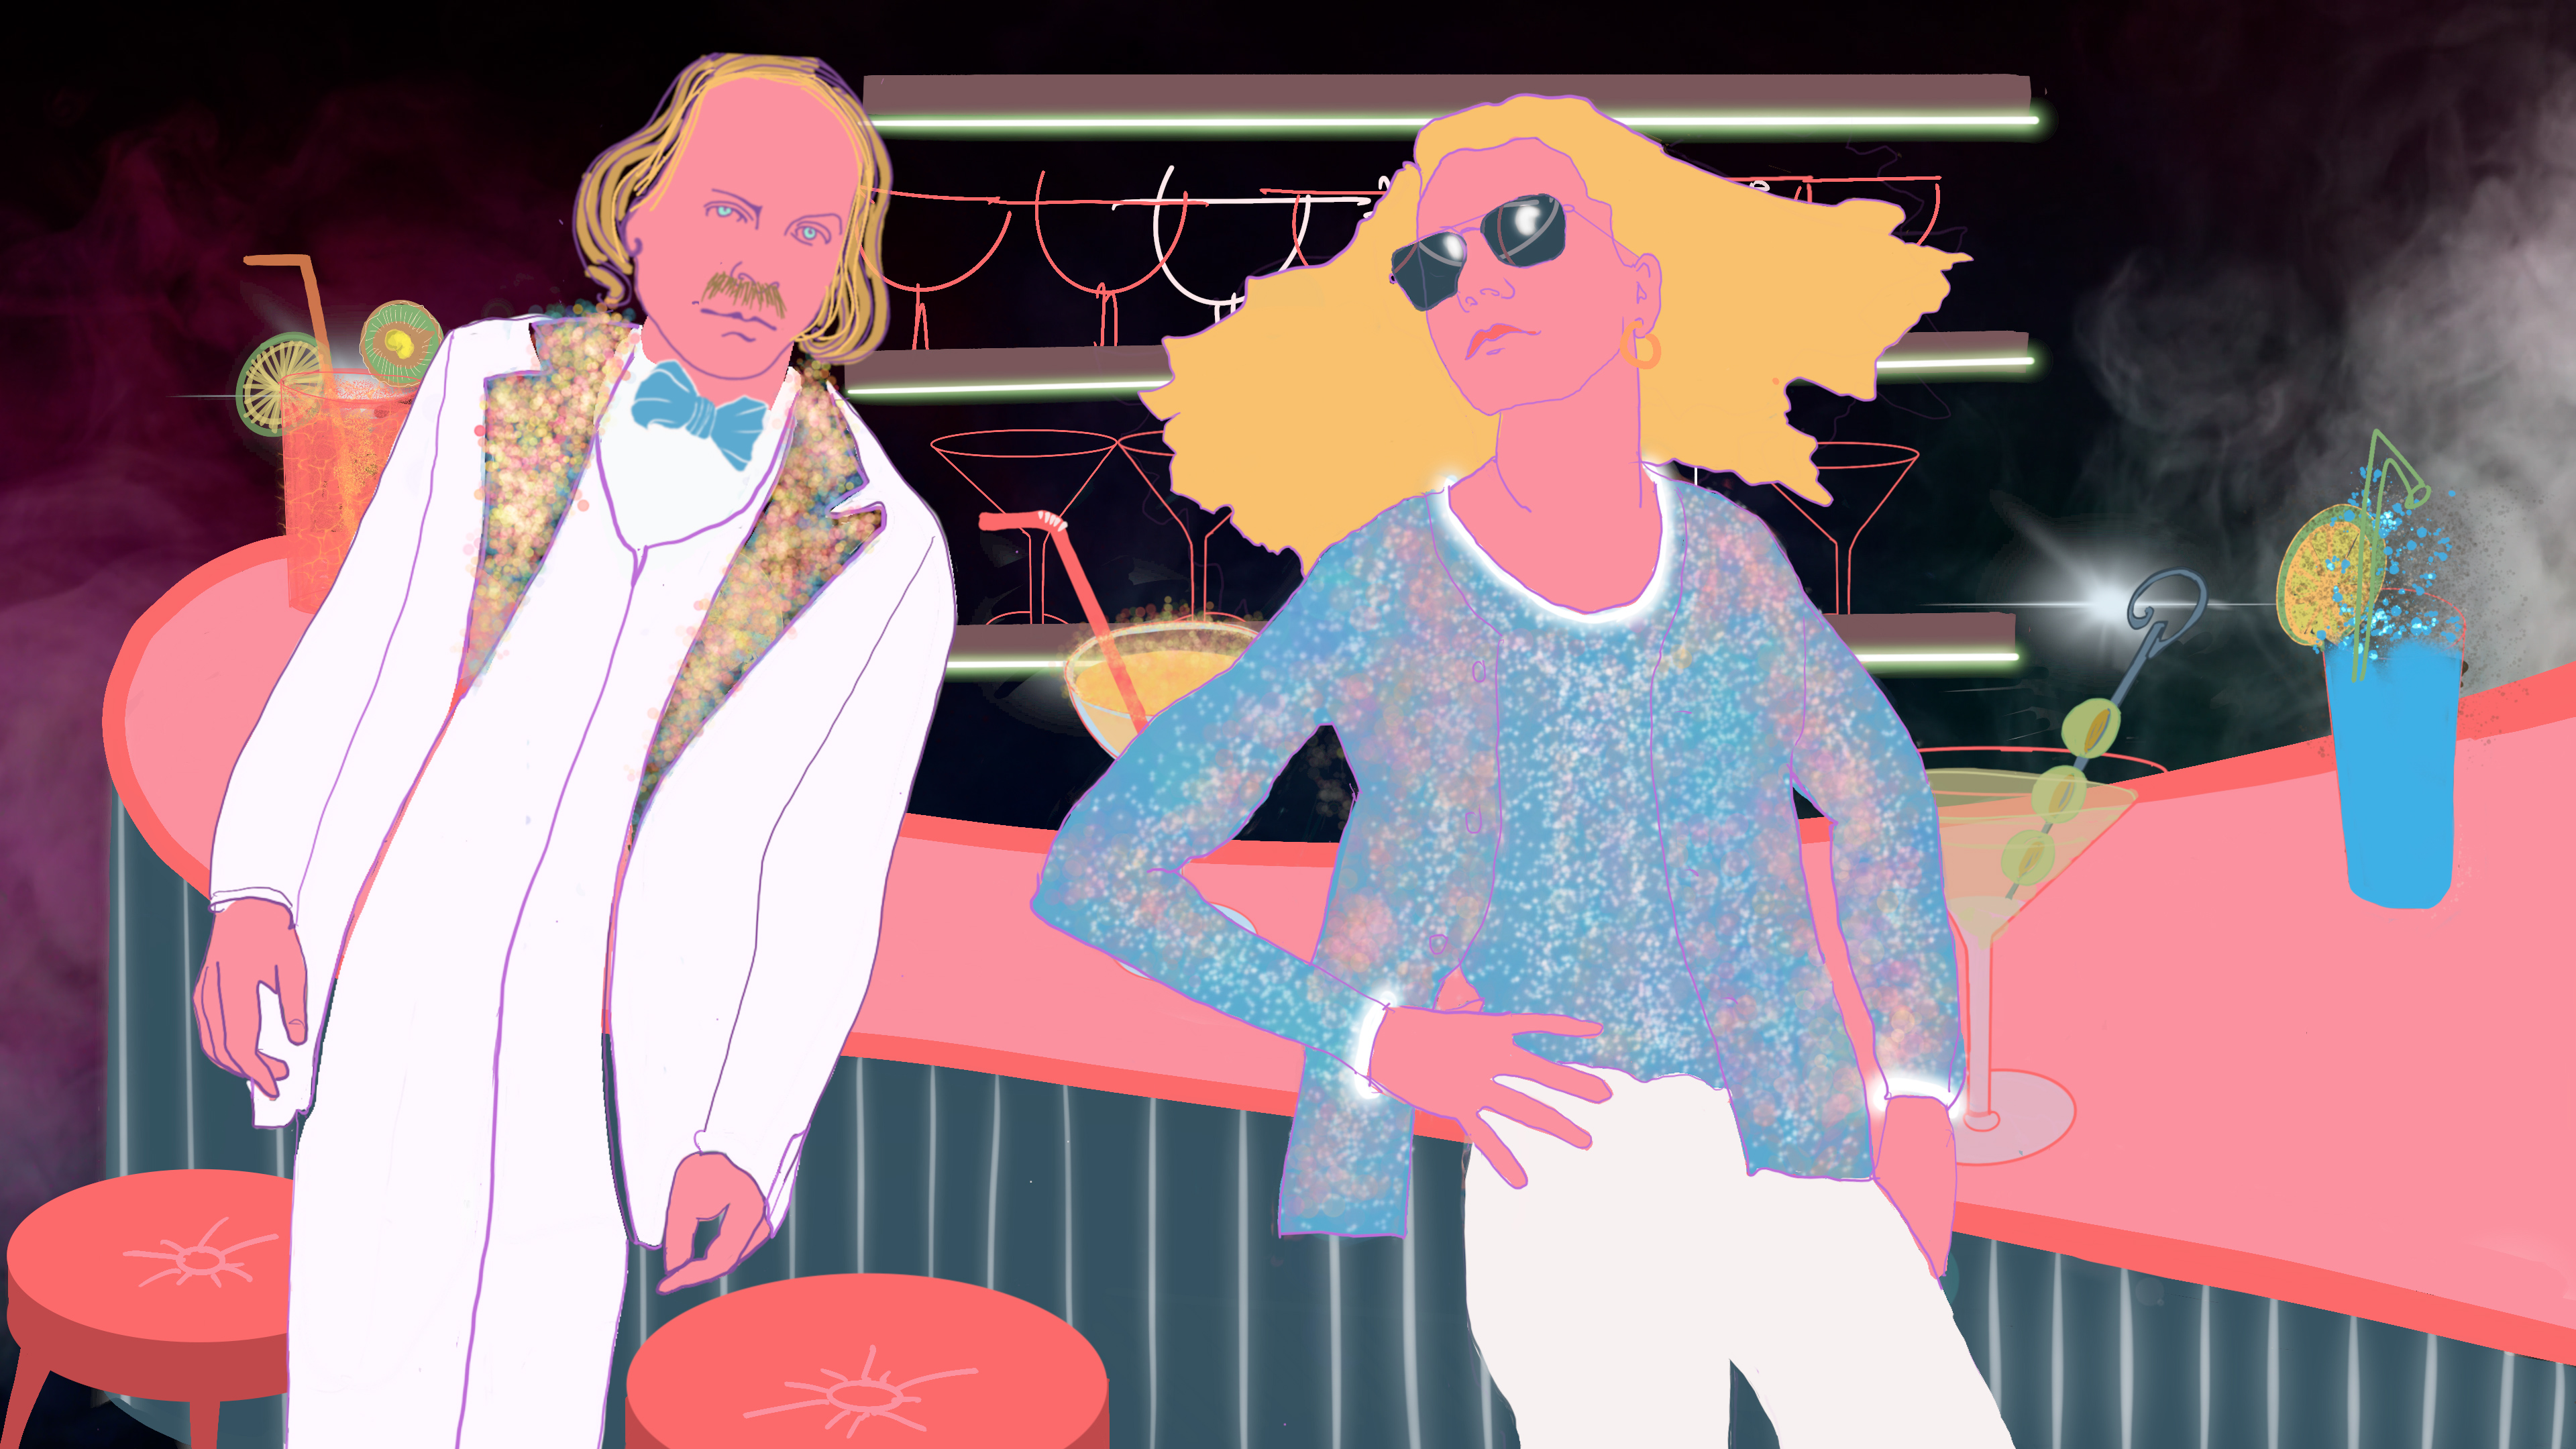 Extrait du clip pop "Roméo" de Mamfredos avec Philippe Katerine. Ils sont accoudés au bar, et attendent un cocktail.